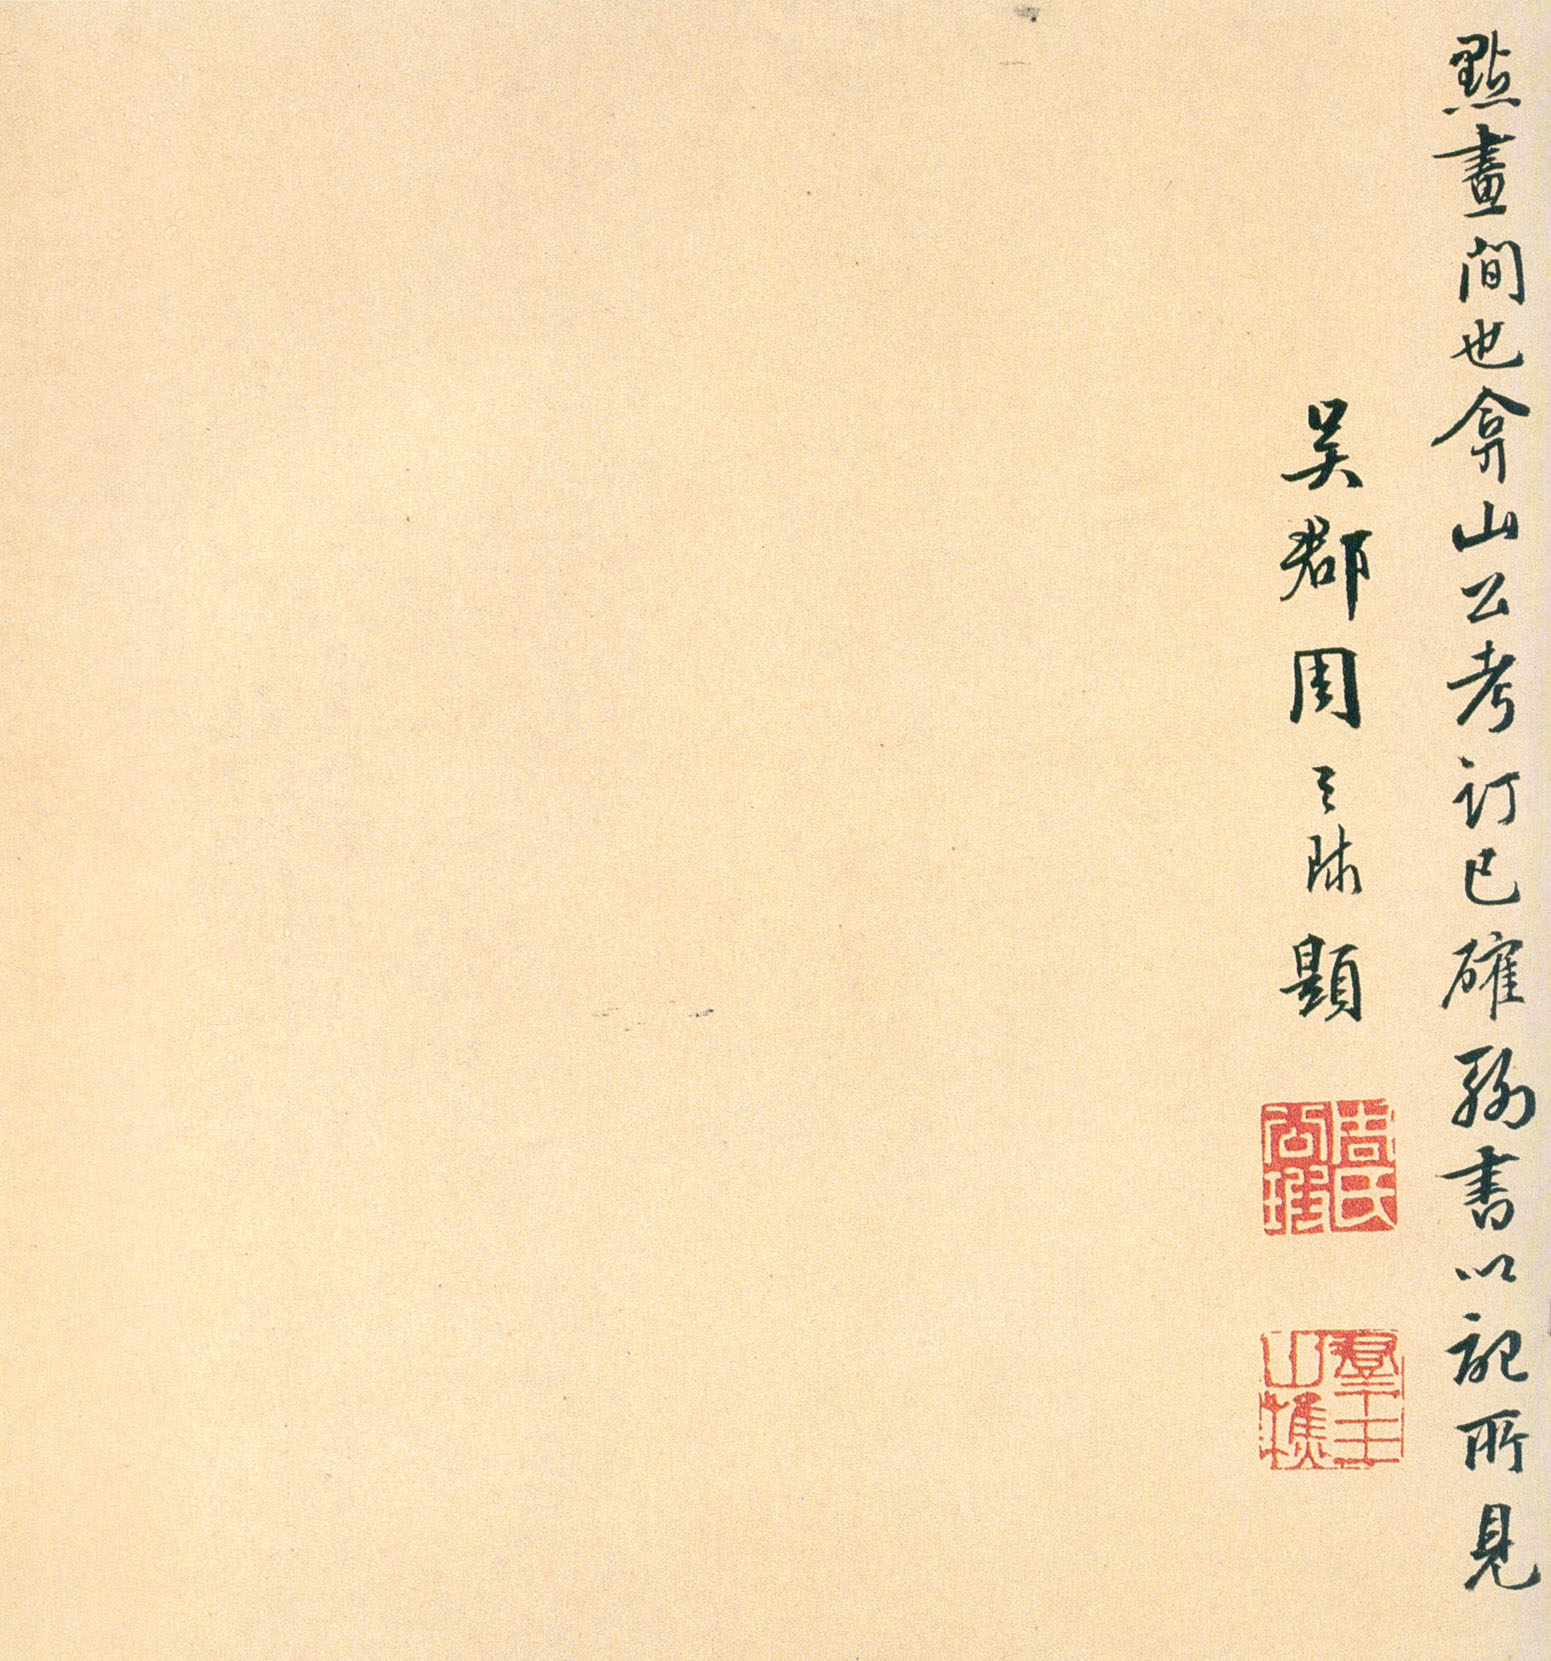 褚遂良《临兰亭序》卷-台北故宫博物院藏(图17)